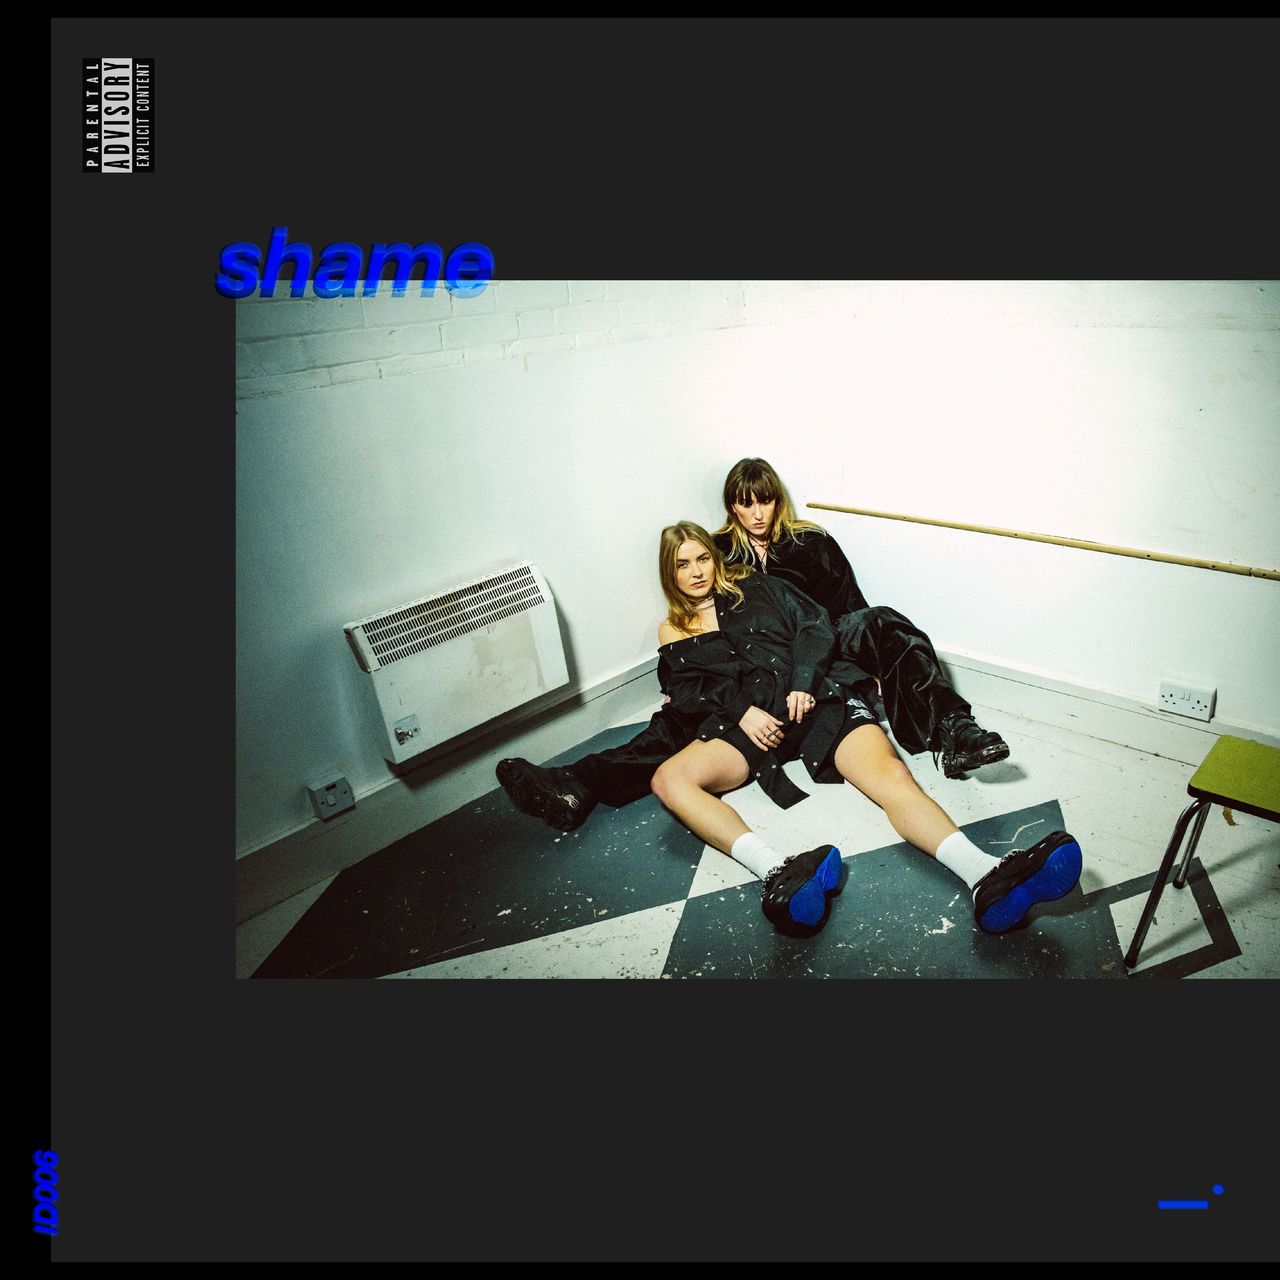 IDER und ihr neues Album "shame"